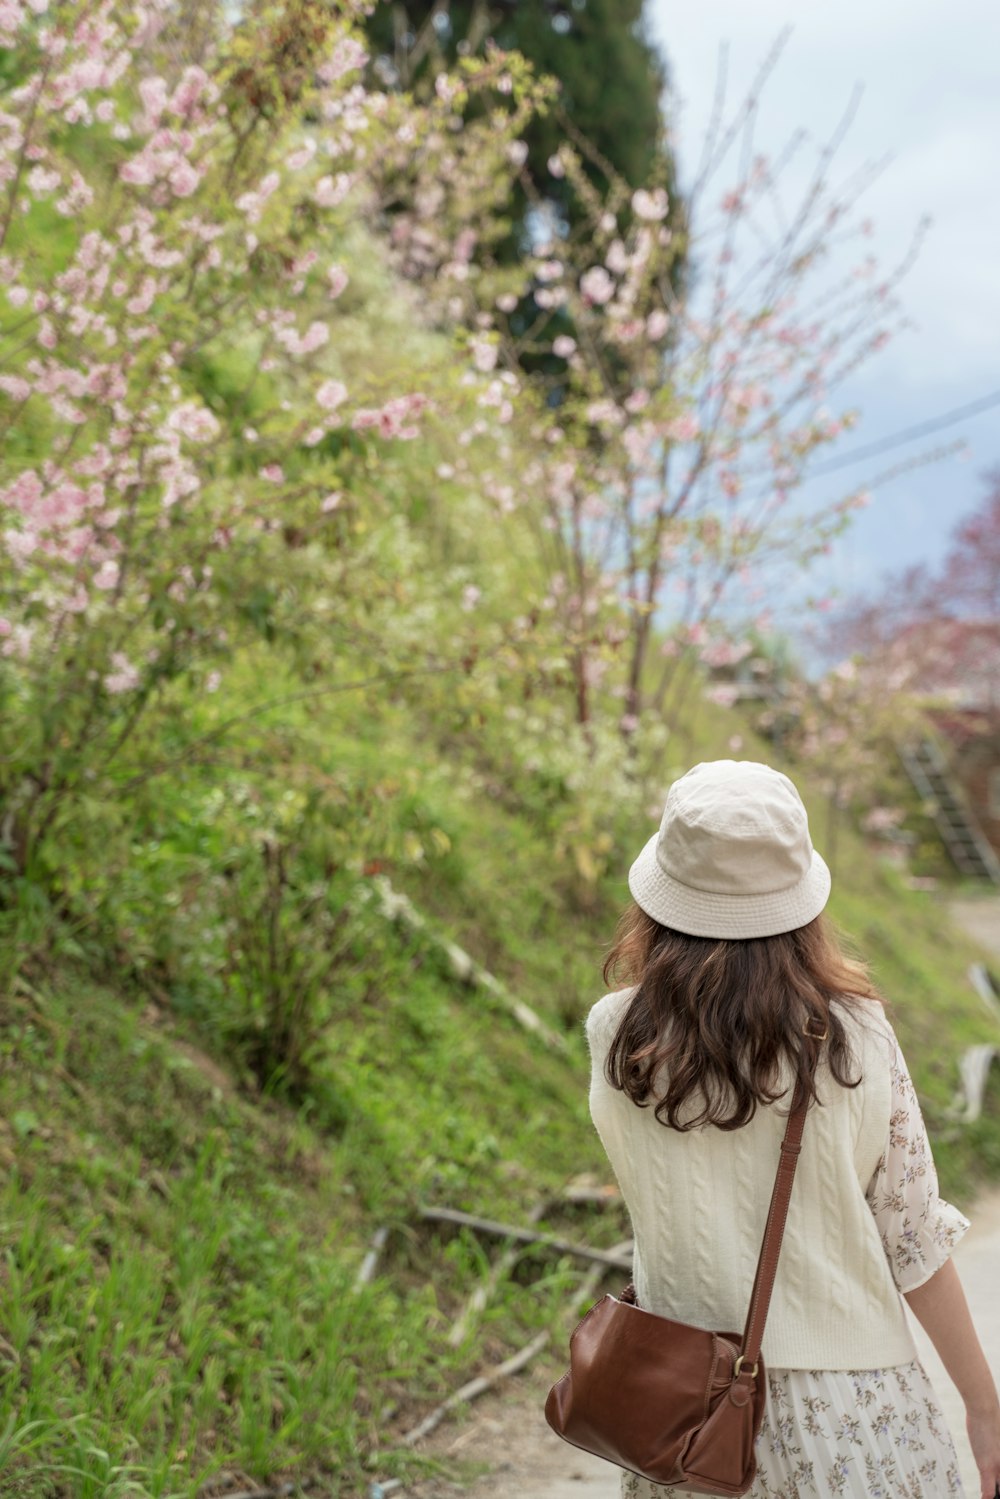 Donna in berretto a maglia bianco in piedi vicino agli alberi verdi durante il giorno